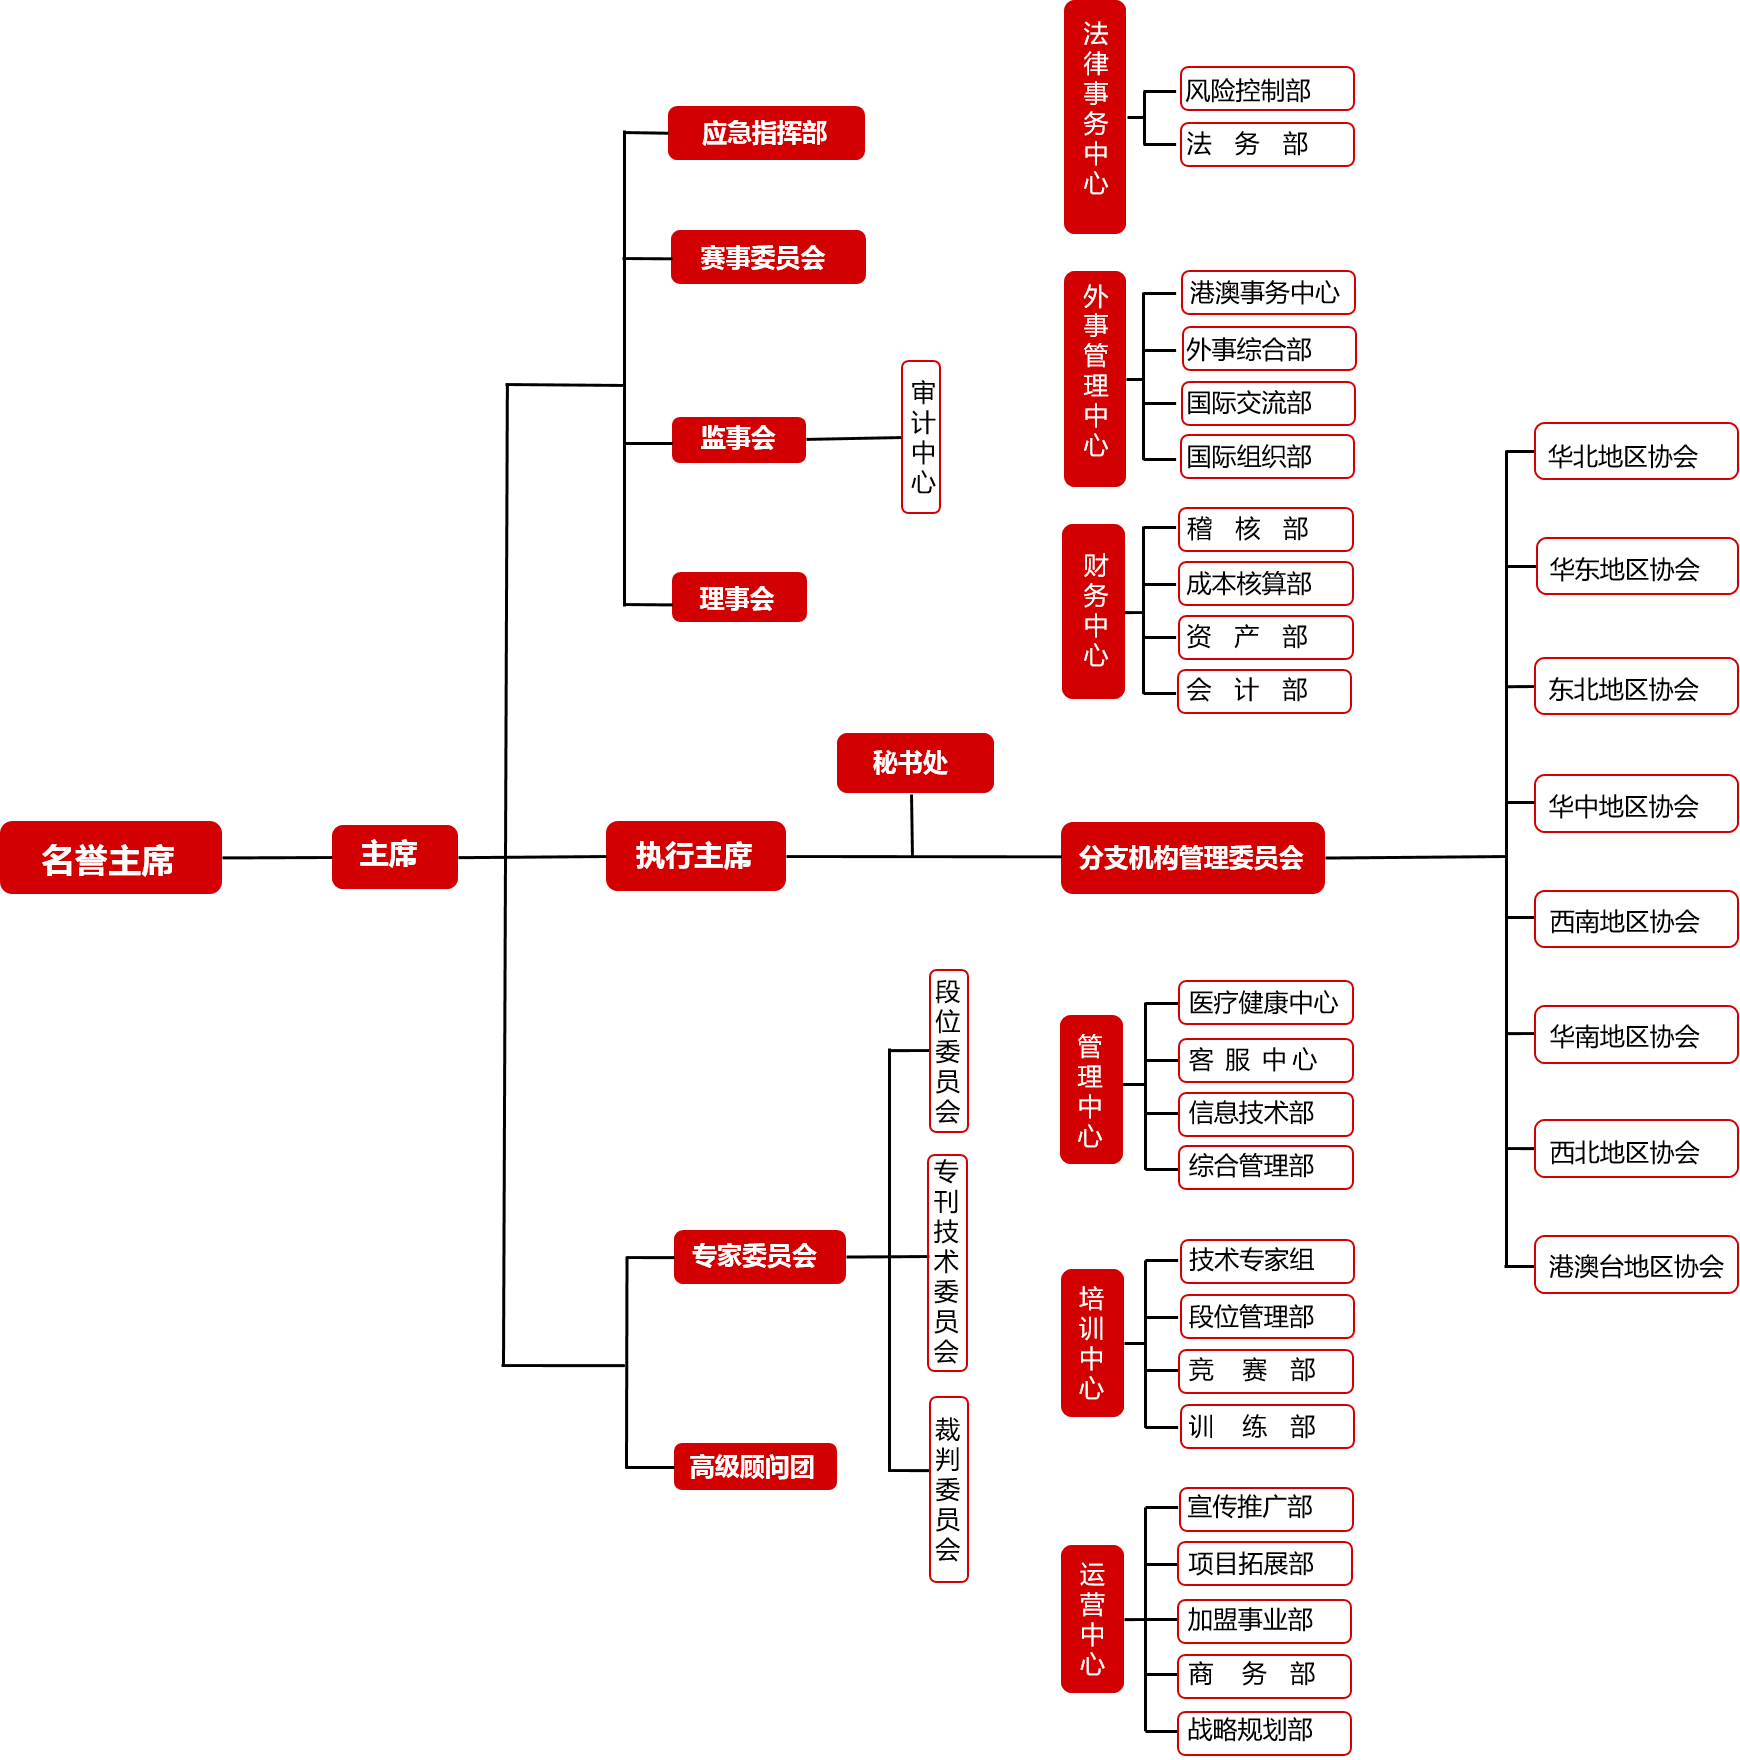 ITF组织架构大图